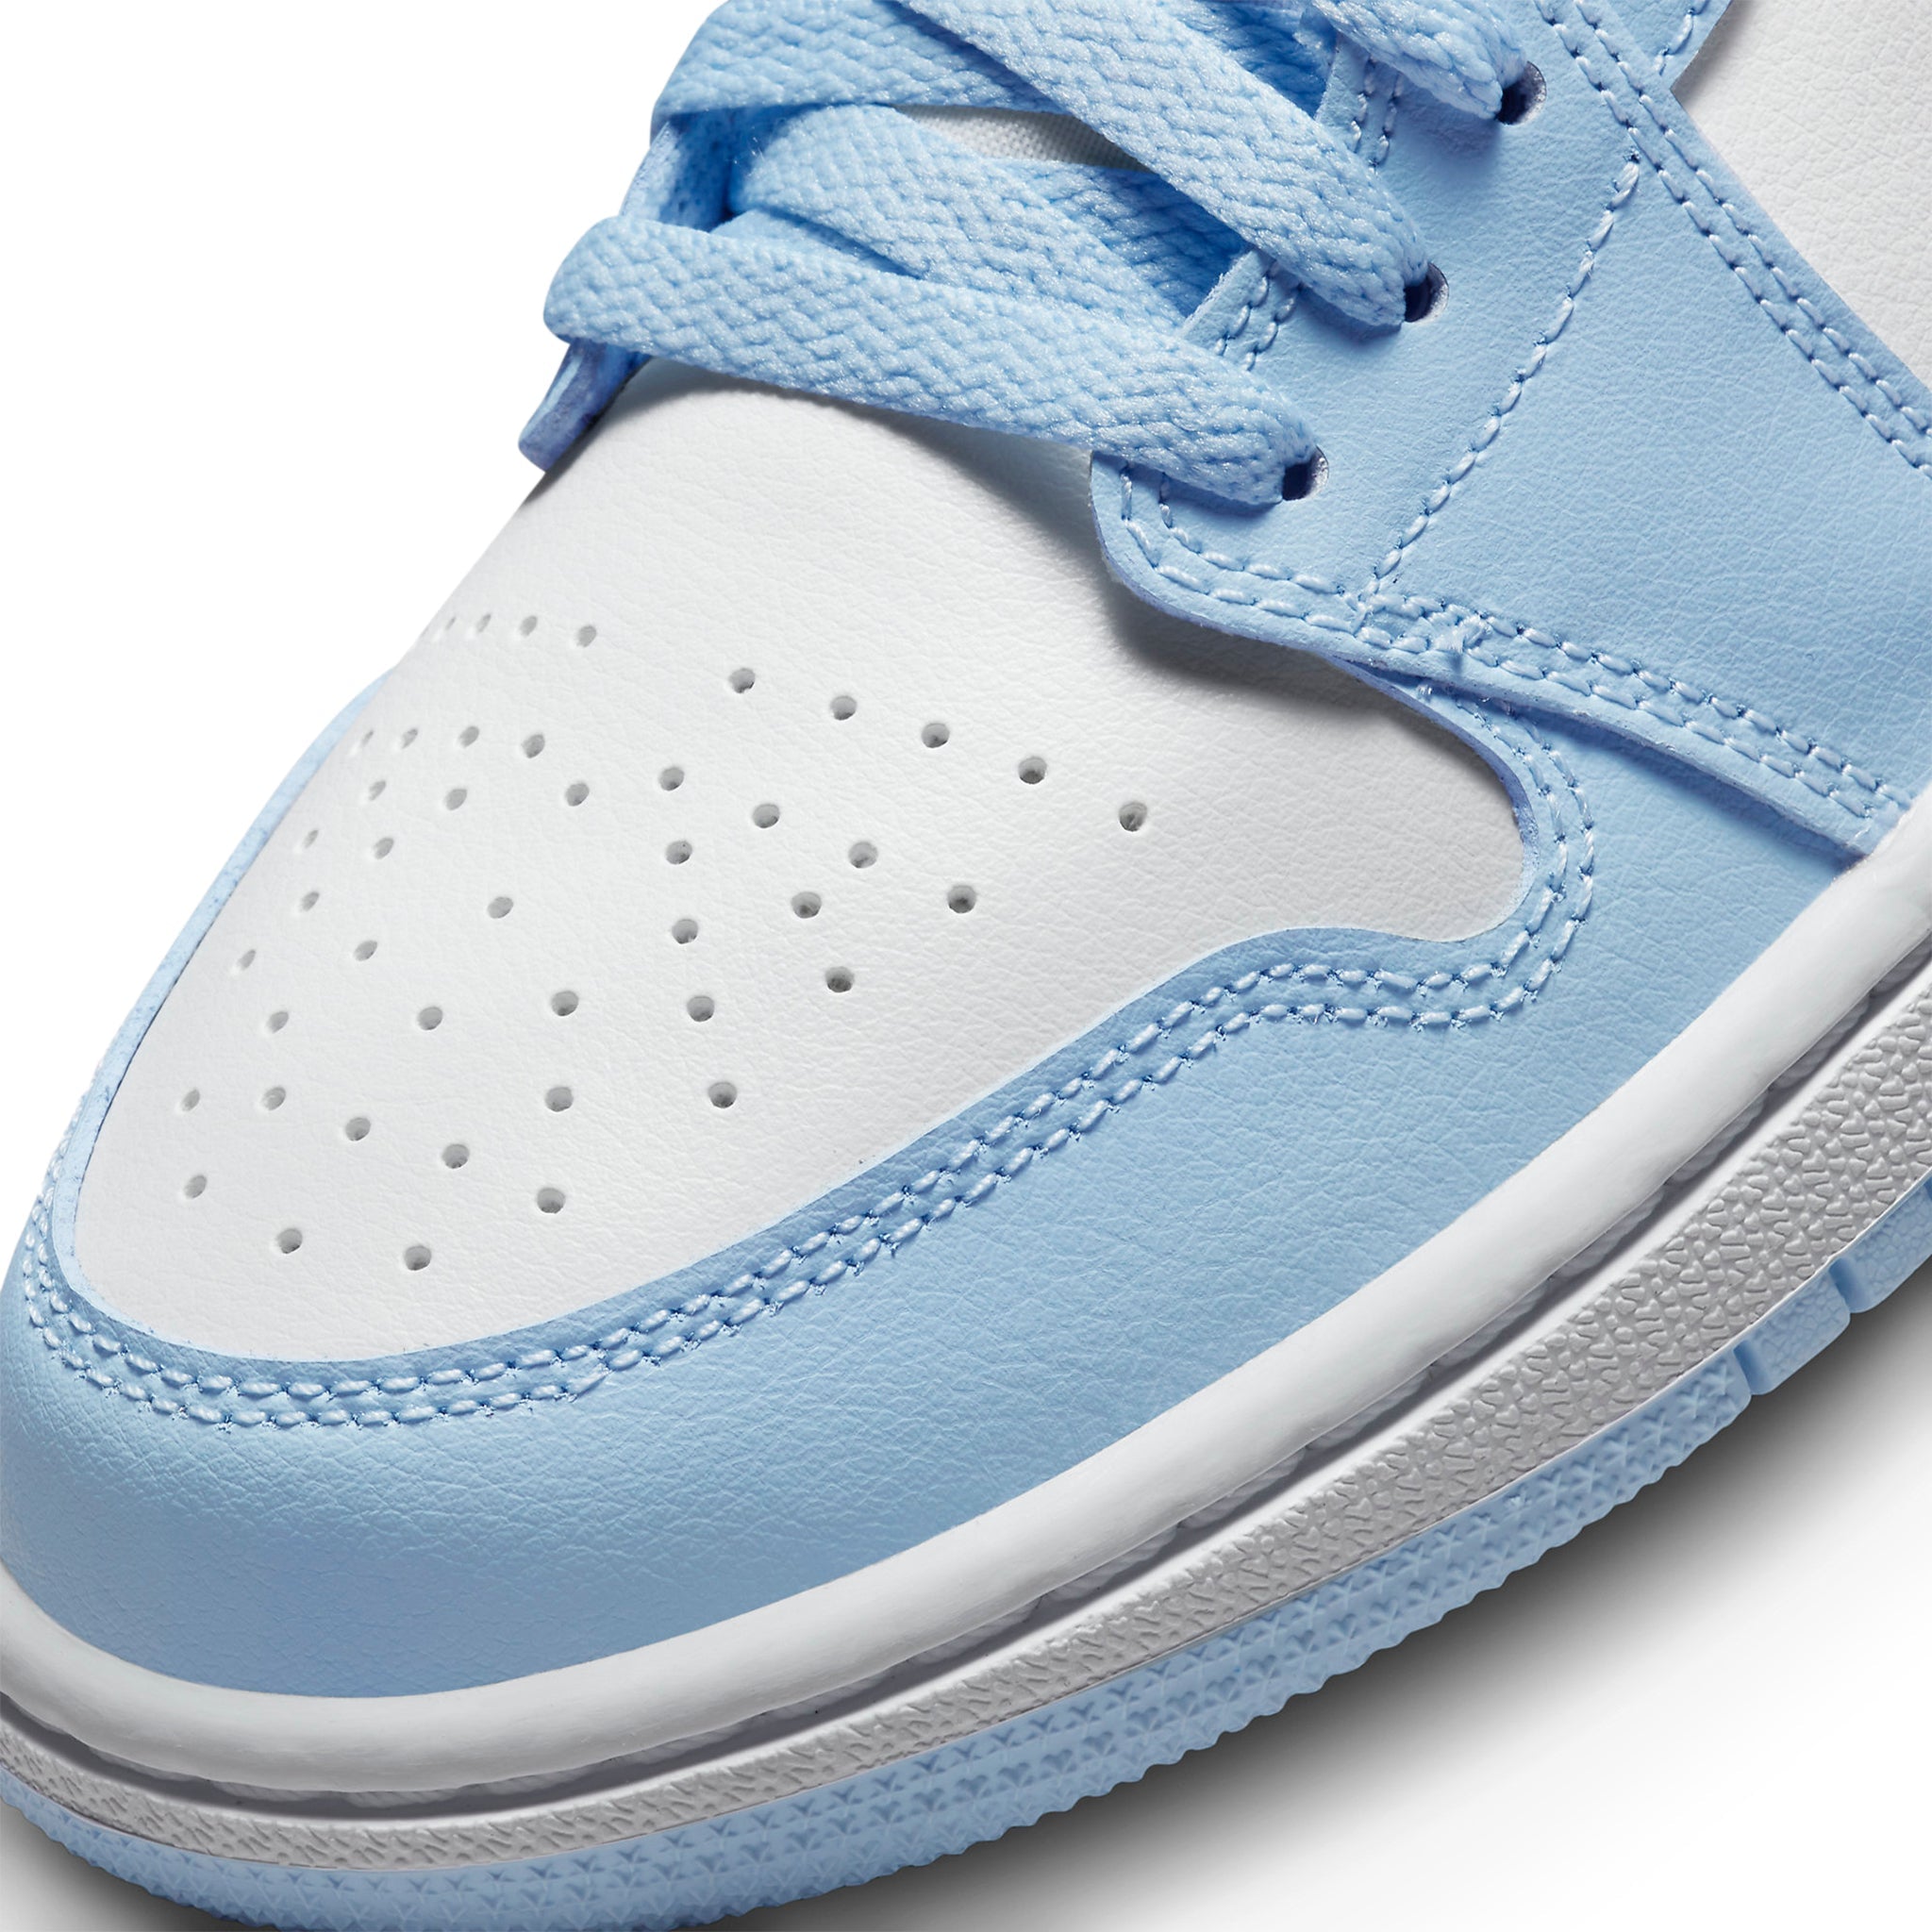 Nike Air Jordan 1 Low "Aluminum" Ice Blue 